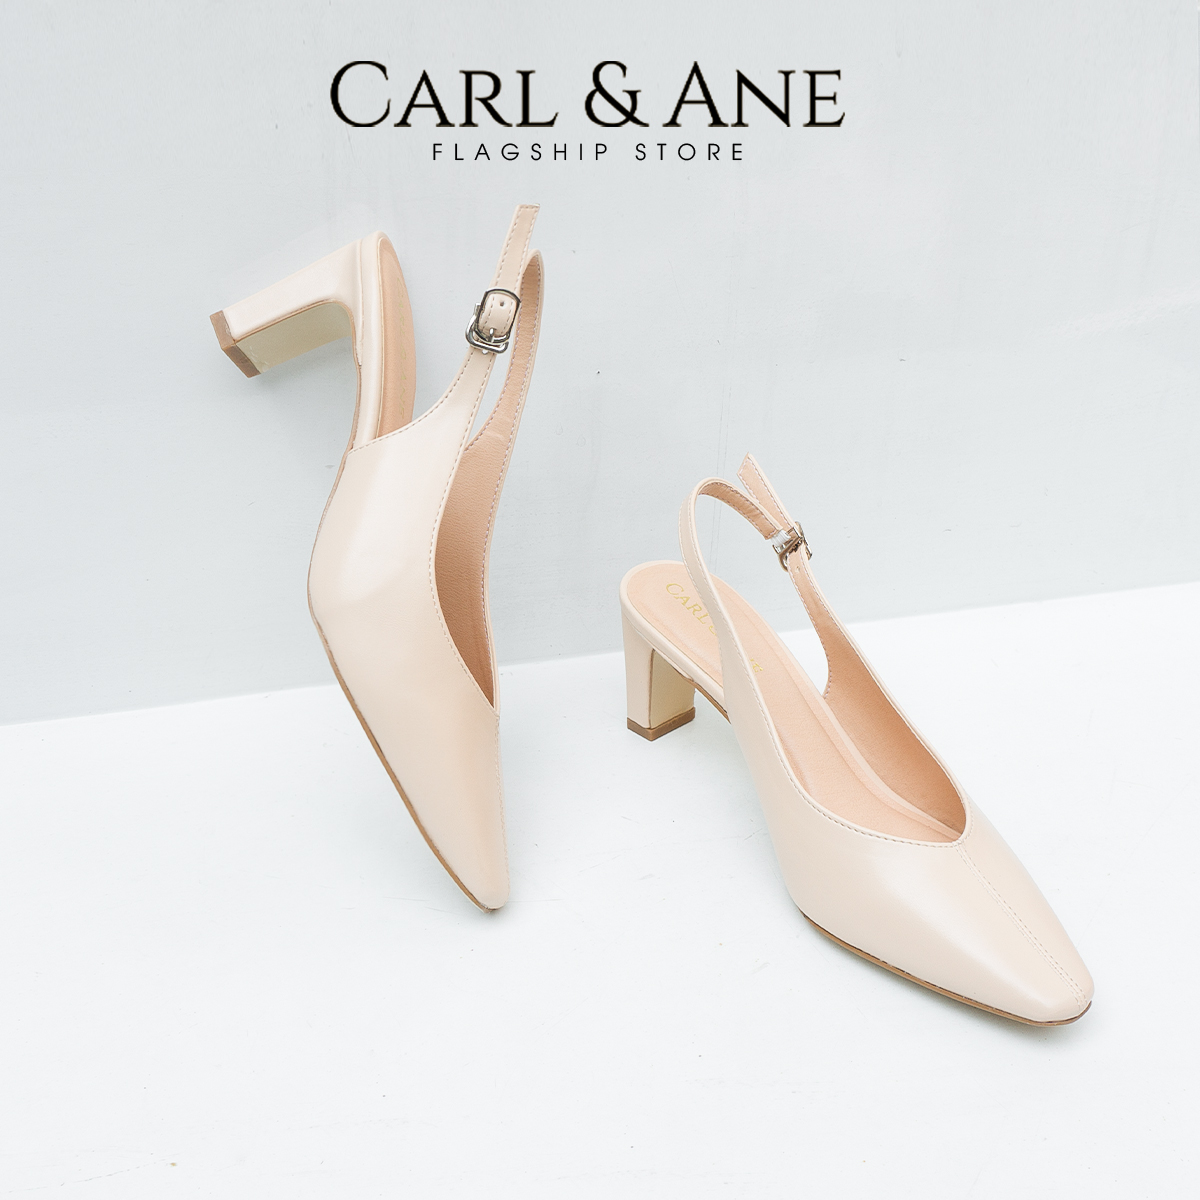 Carl & Ane - Giày cao gót mũi nhọn phối quai thời trang công sở cao 6cm màu nude - CL027